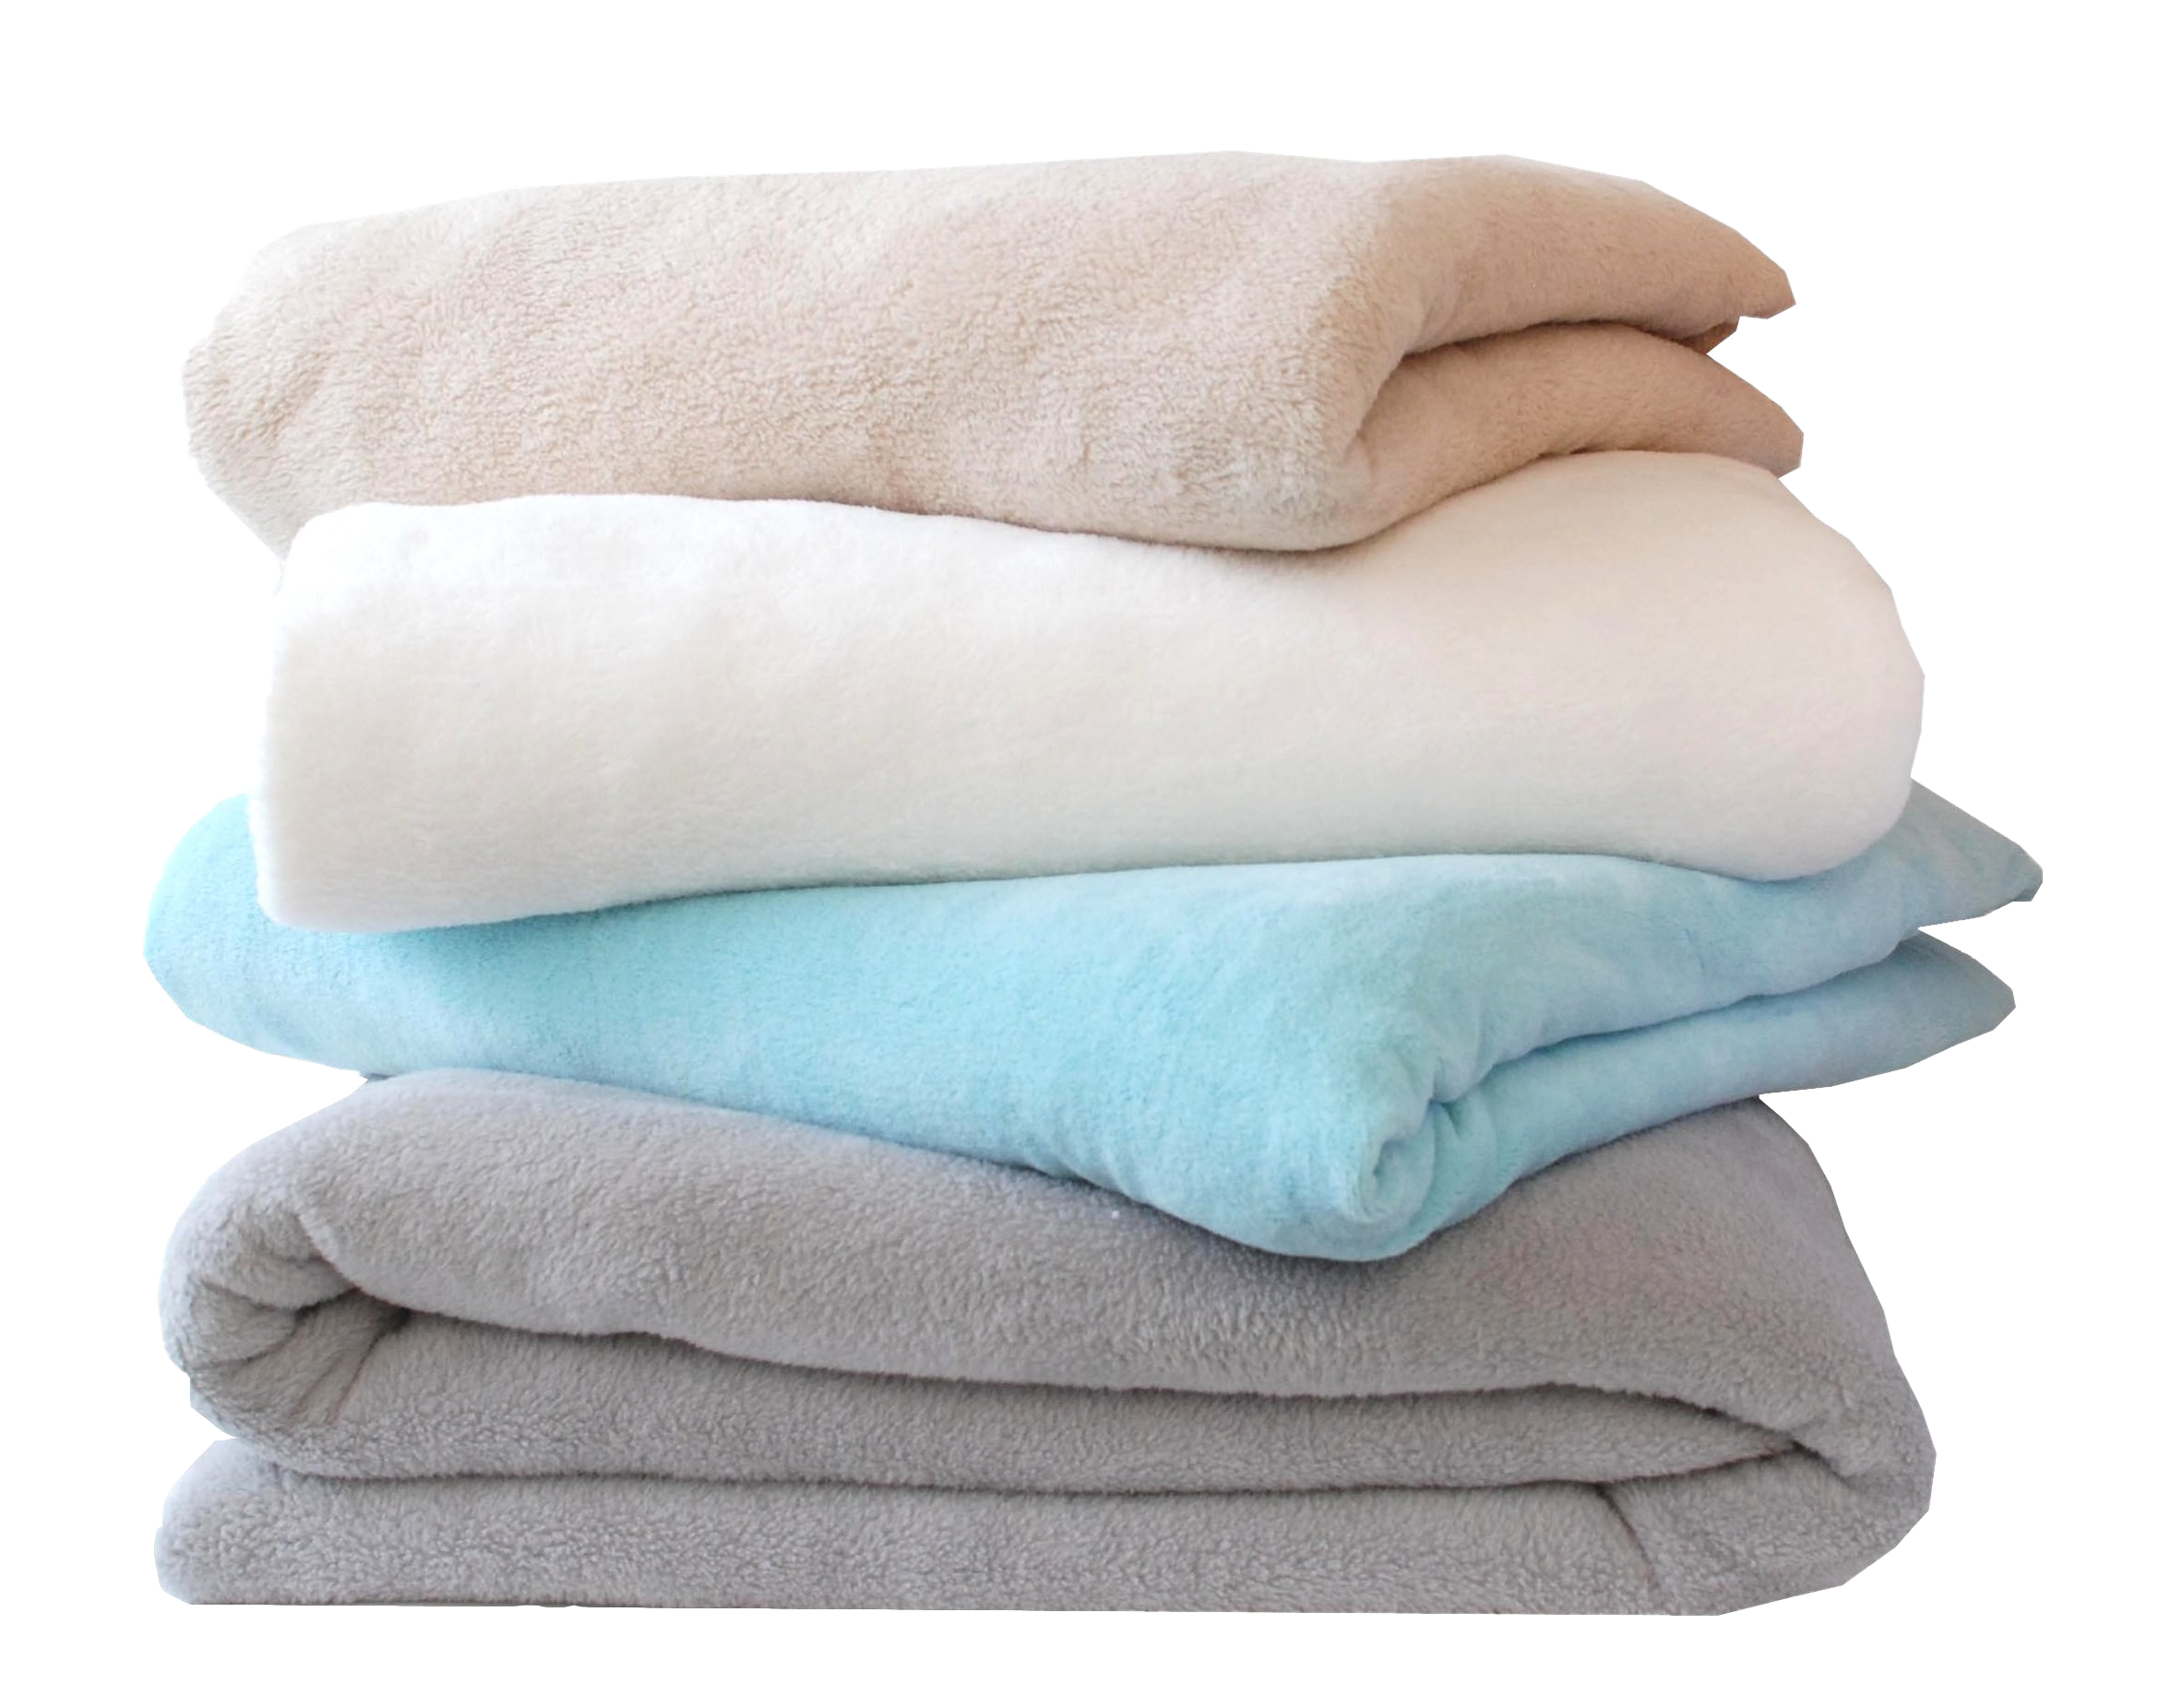 Подушка полотенце. Одеяло. Плед сложенный. Одеяло и подушка. Красивое одеяло.